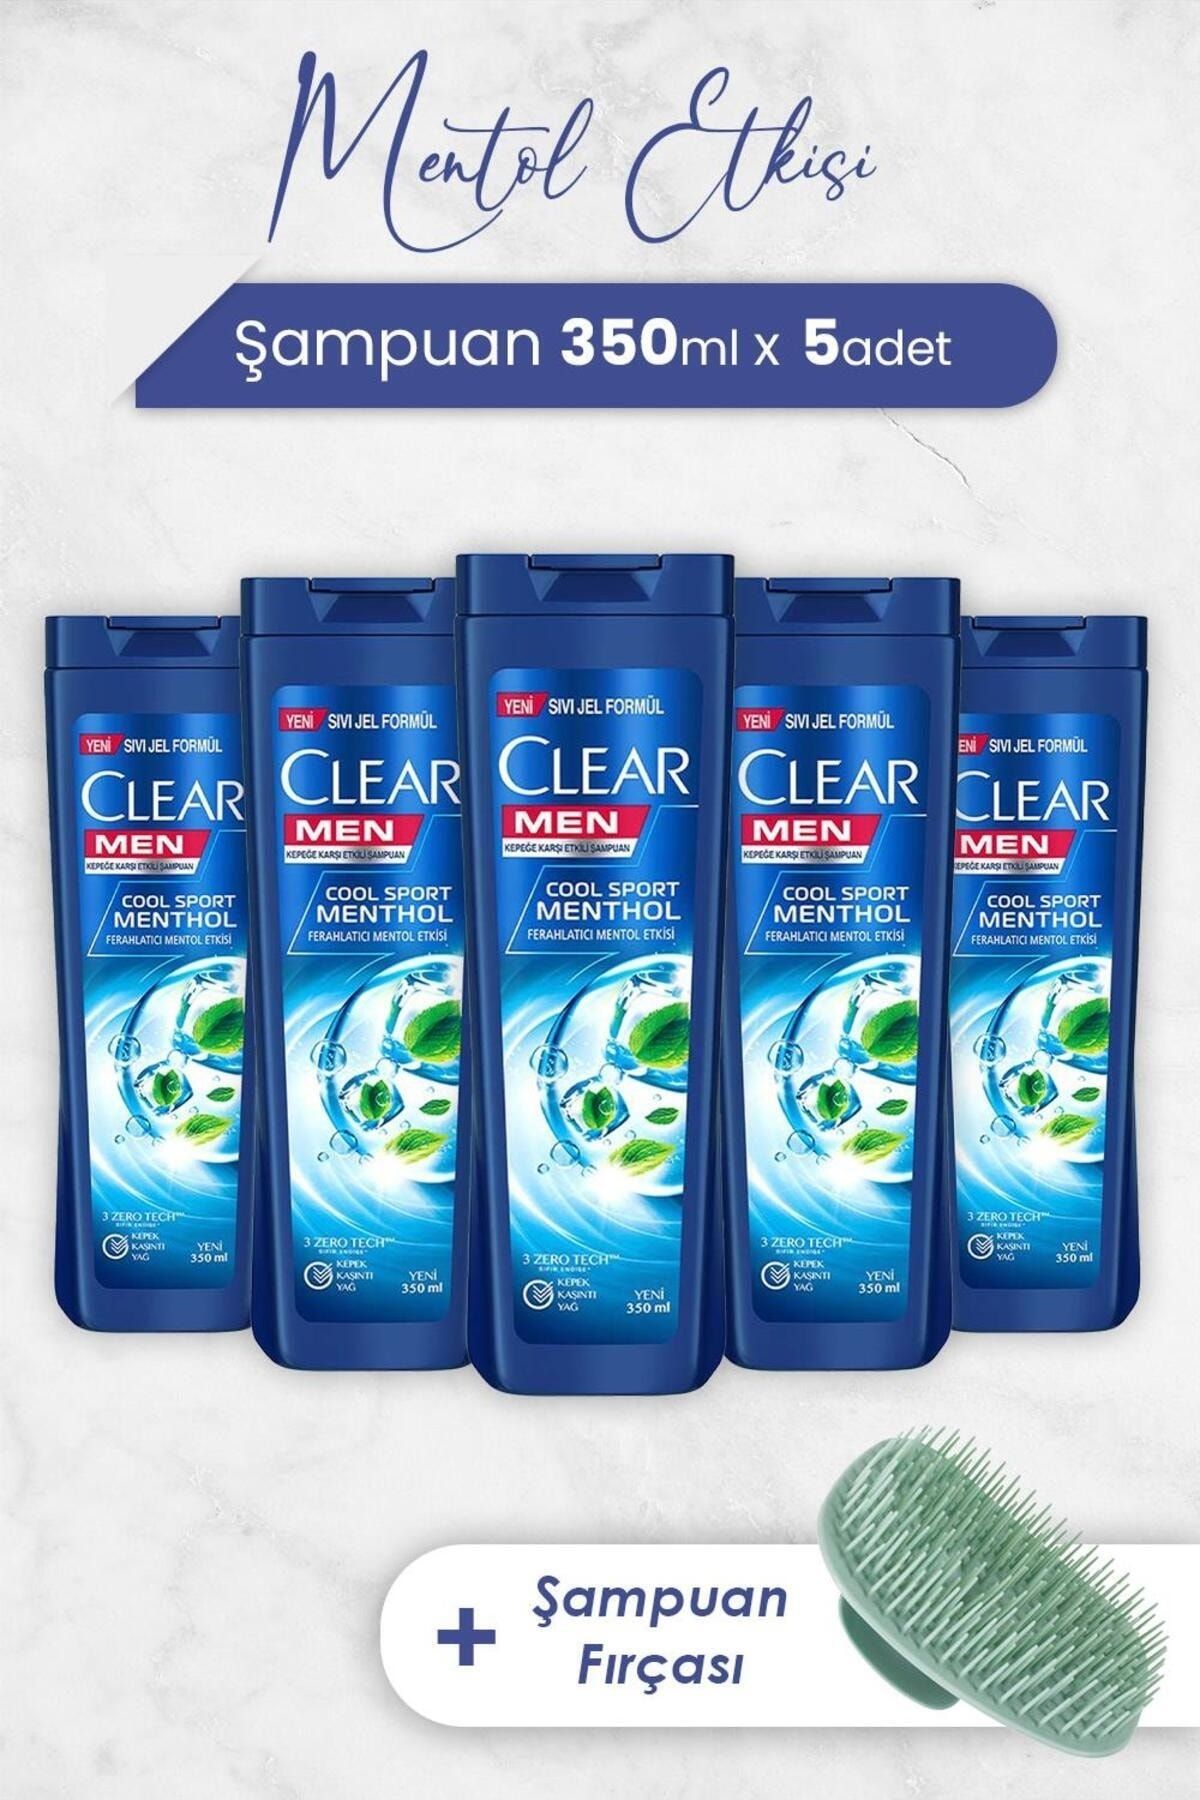 Clear Men Şampuan Ferahlatıcı Mentol Etkisi 350 ml x 5 Adet ve Şampuan Fırçası